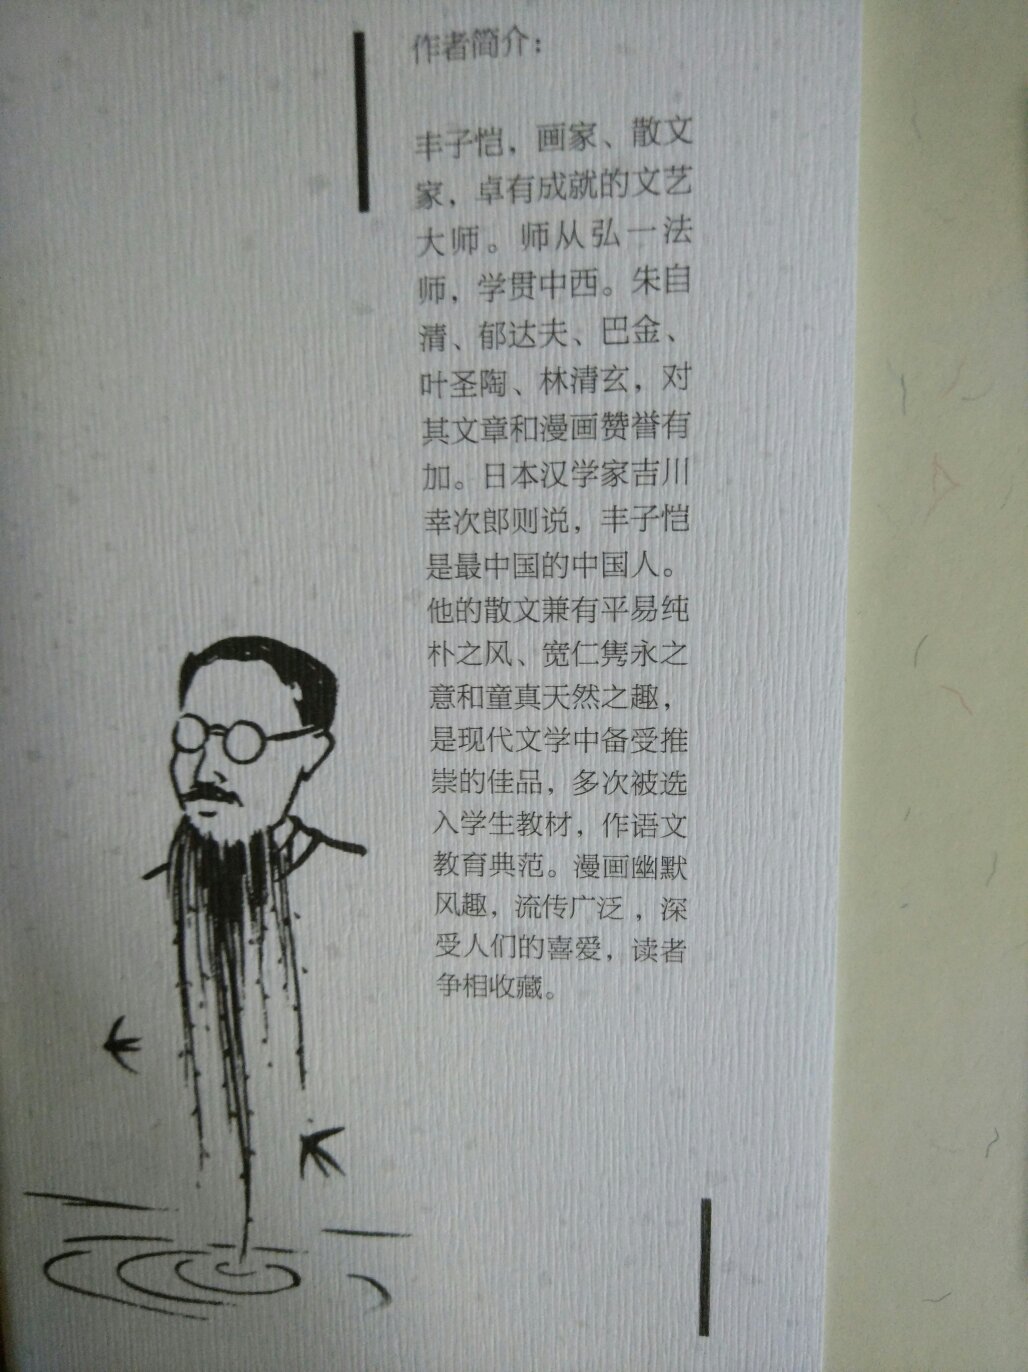 装帧很美，字体好看，彩漫超贊，不愧是近代中国漫画开山鼻祖！